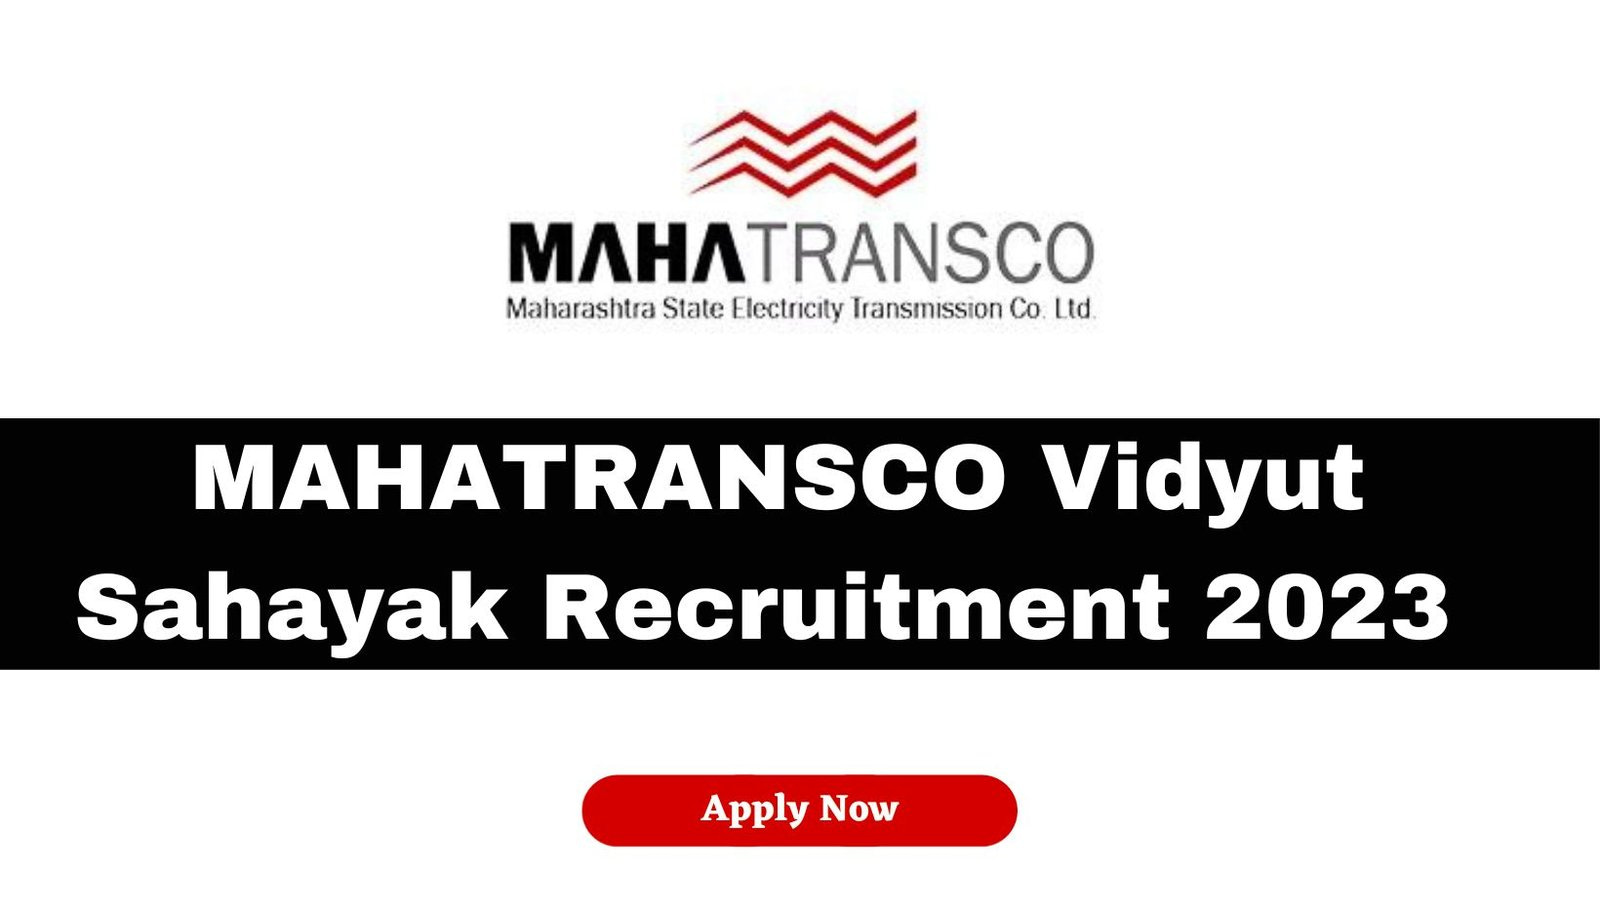 MAHATRANSCO Vidyut Sahayak Recruitment 2023 – 1903 Vanacies – Check Now